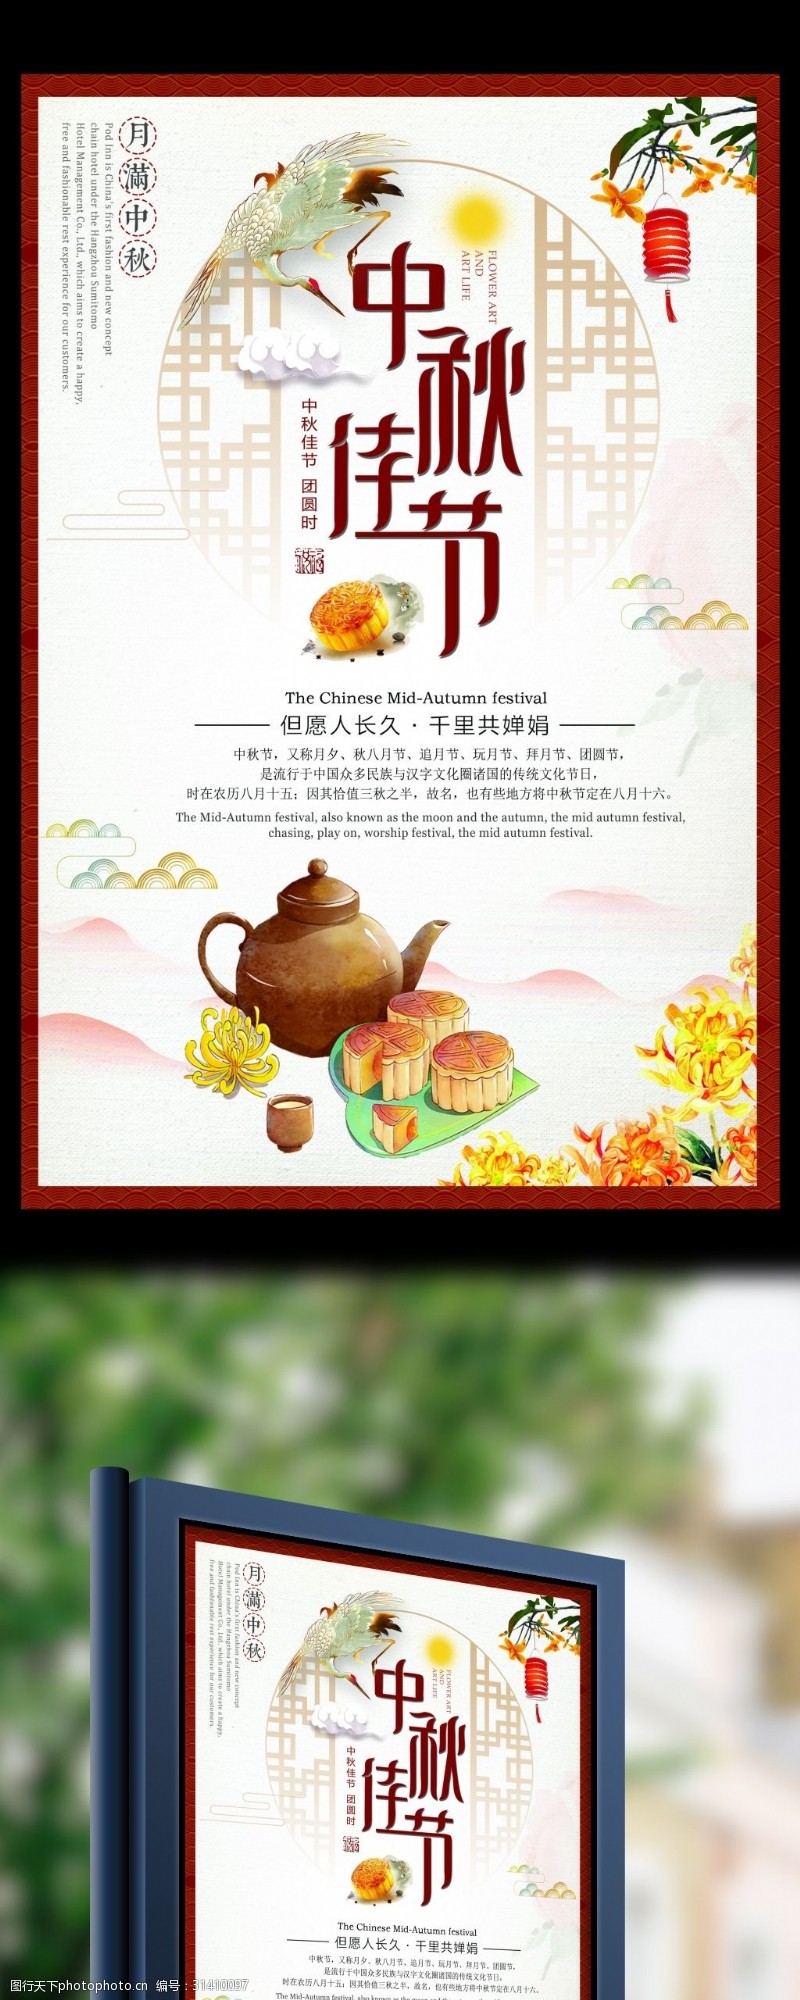 餐厅文化宣传中国风唯美中秋佳节宣传海报